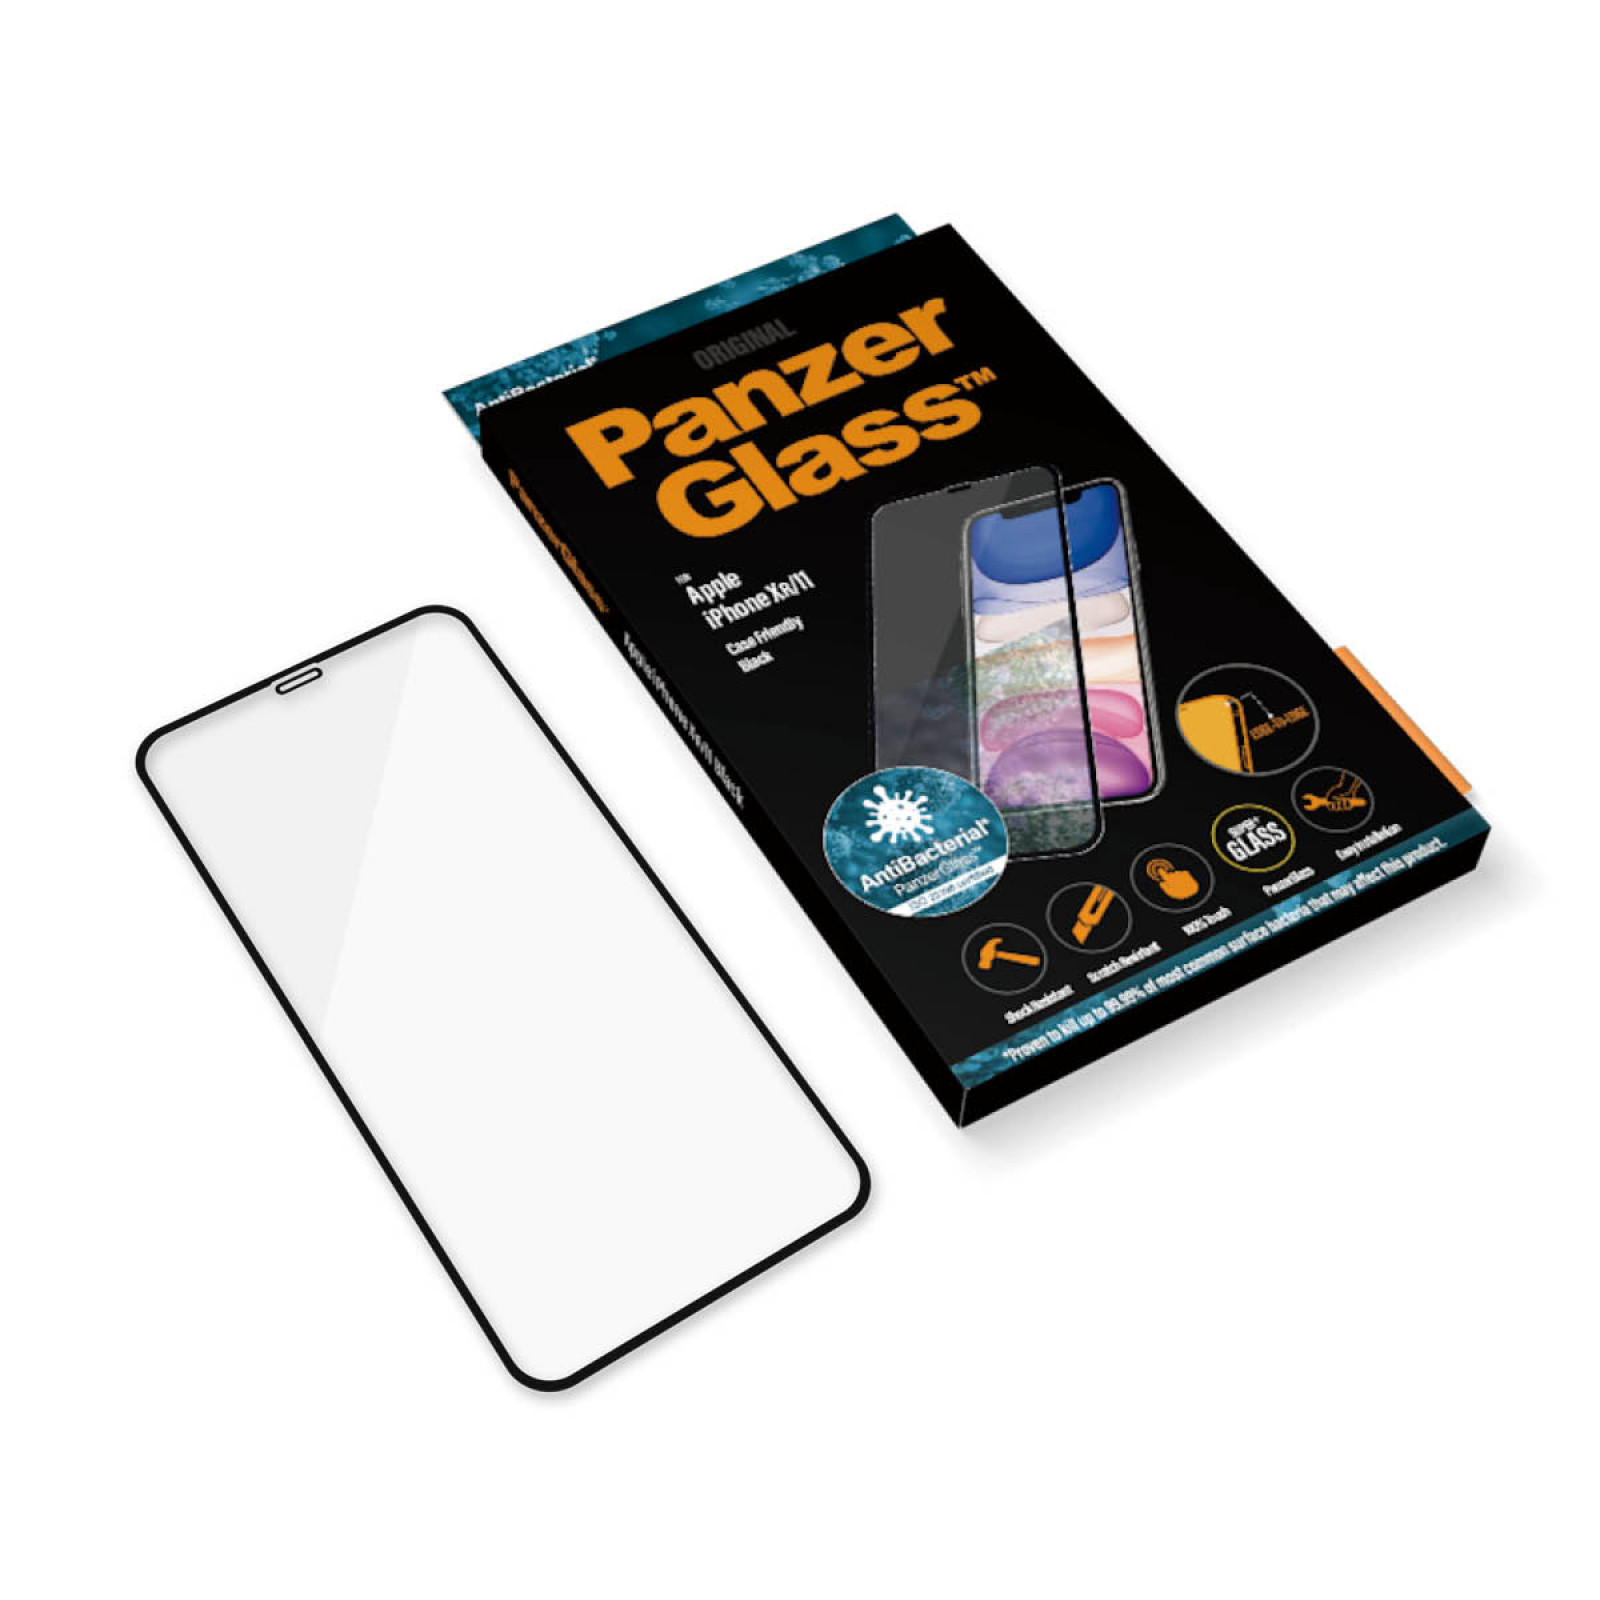 Стъклен протектор PanzerGlass за Apple iPhone 11/iPhone XR Case Friendly Прозрачен